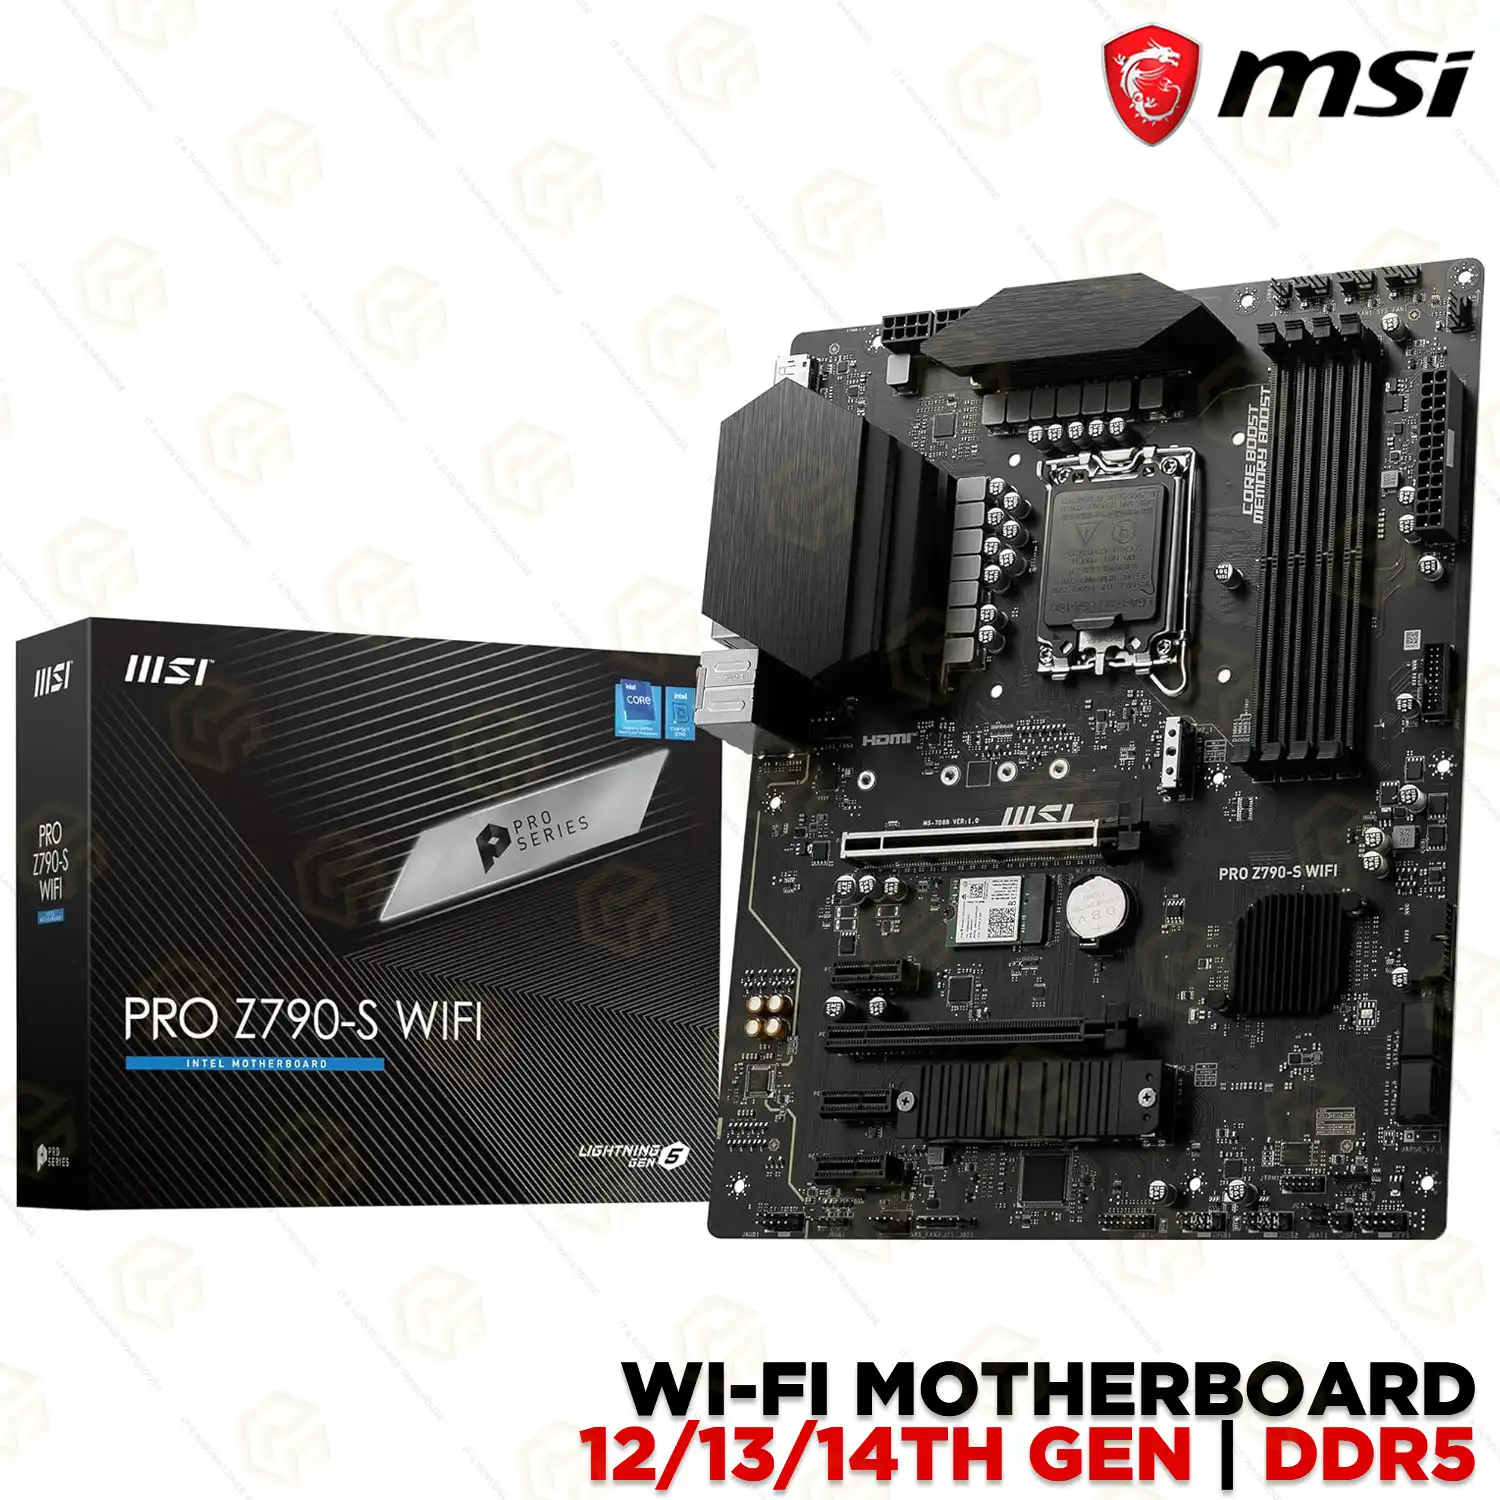 MSI Z790-S WIFI DDR5 MOTHERBOARD (12/13/14TH GEN)